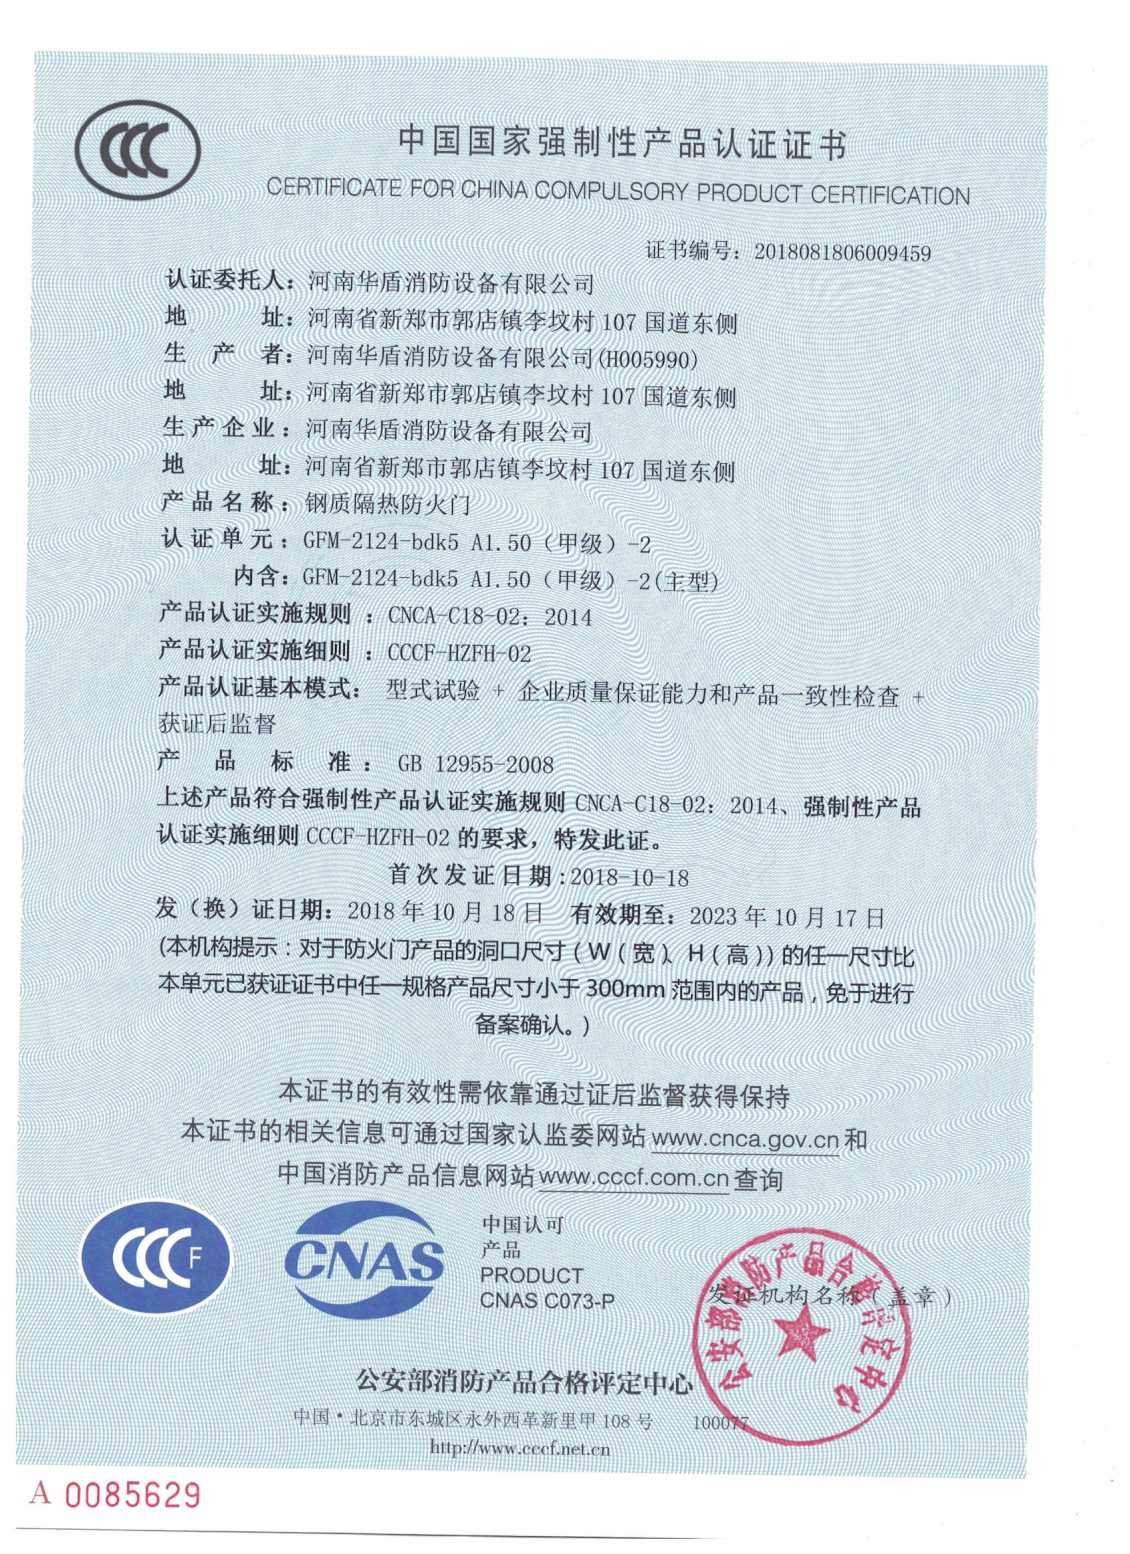 陕西GFM-2124-bdk5A1.50（甲级）-2-3C证书